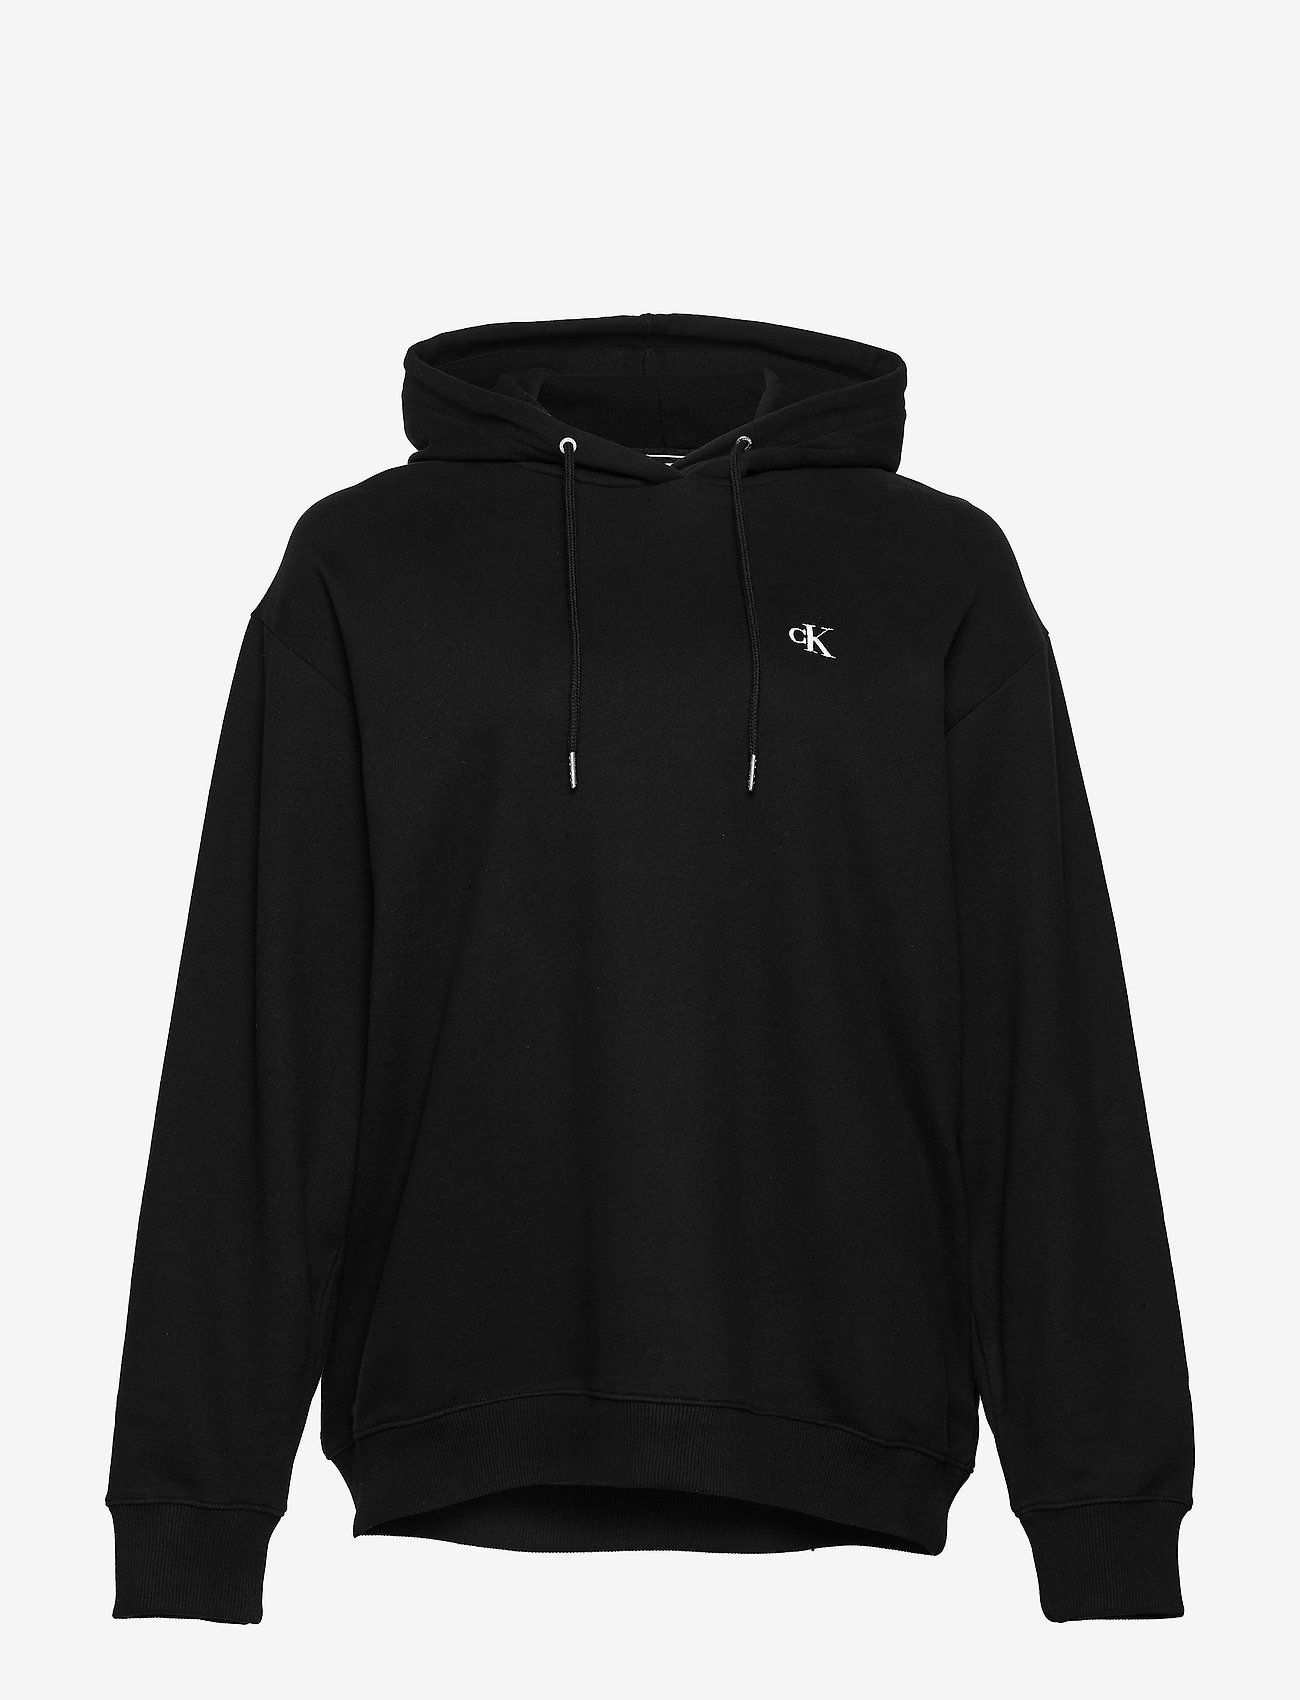 bum black army hoodie